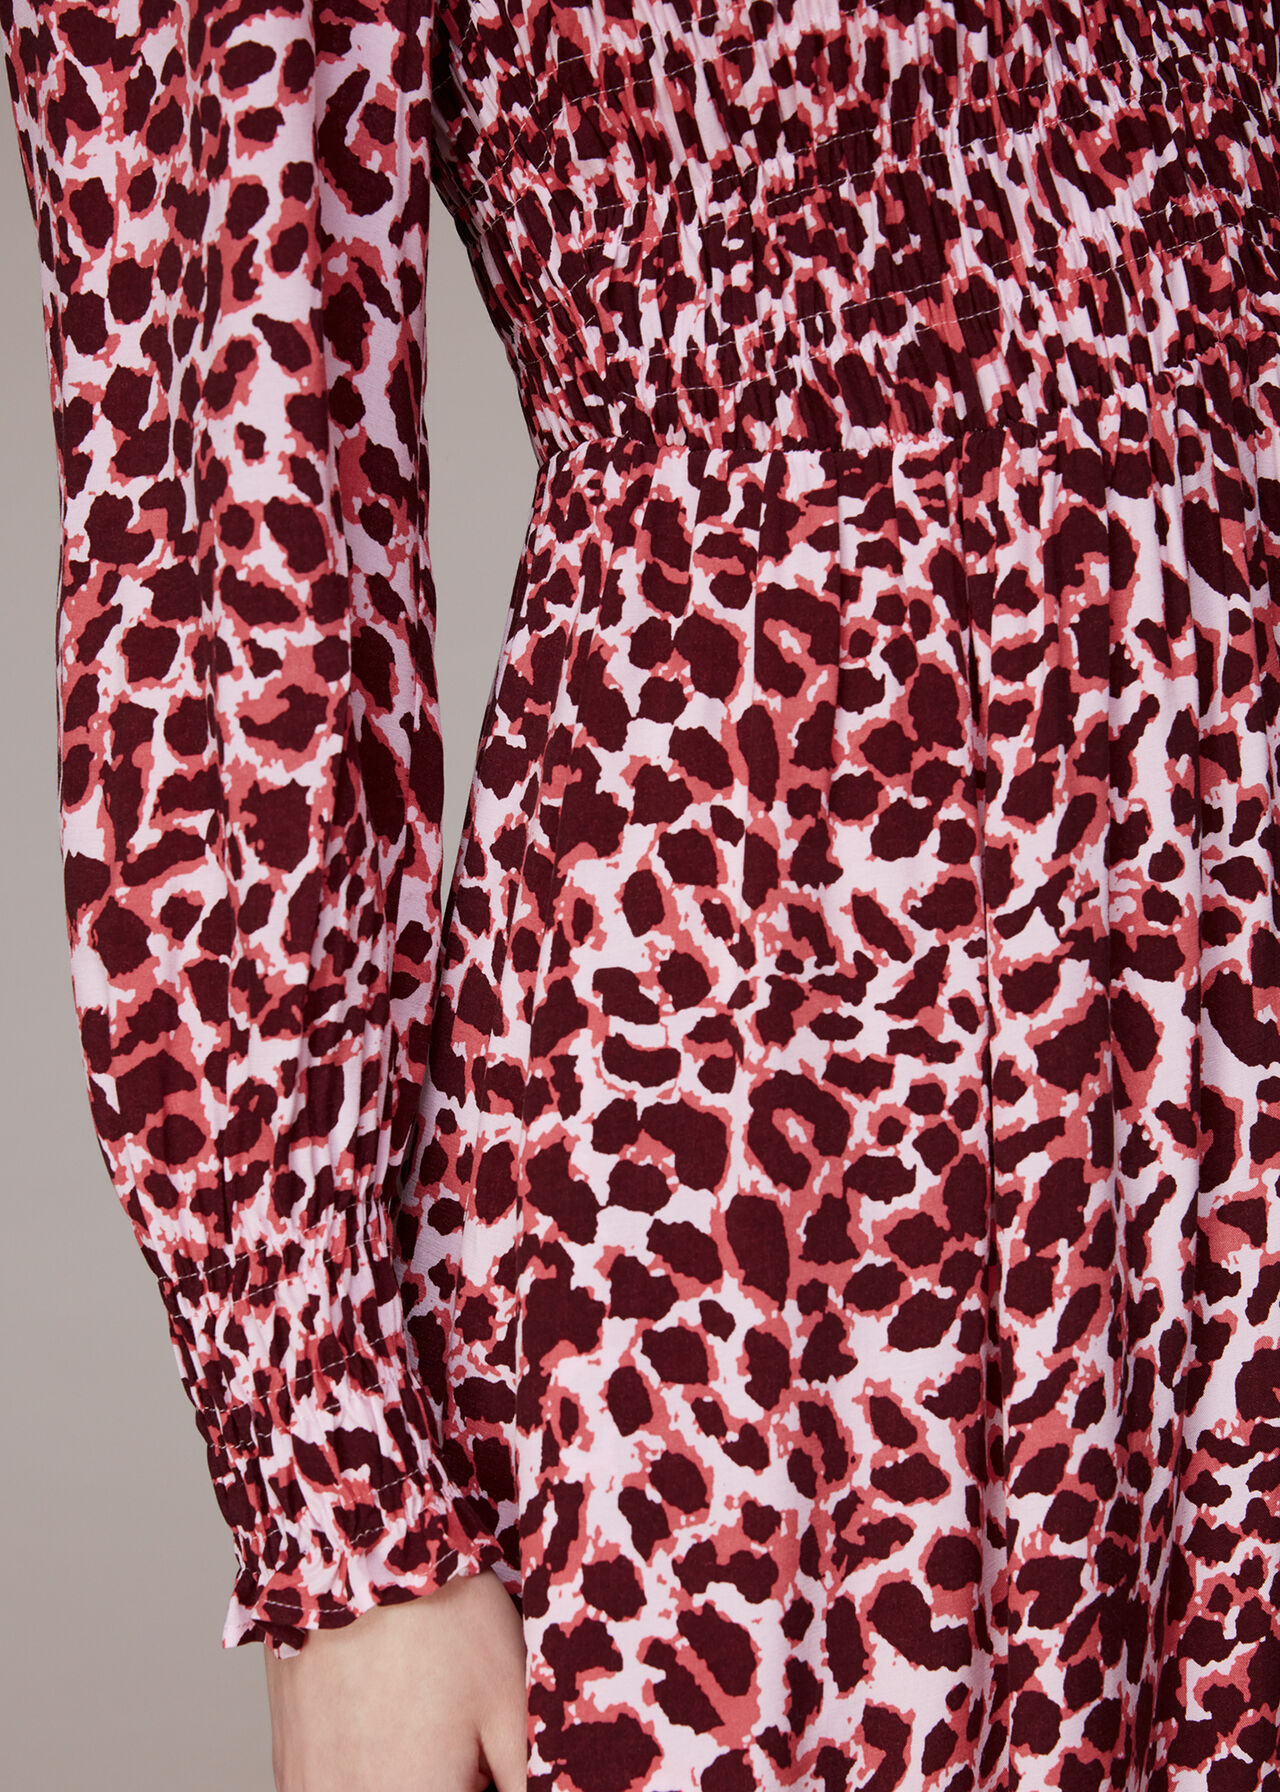 Abstract Cheetah Print Dress